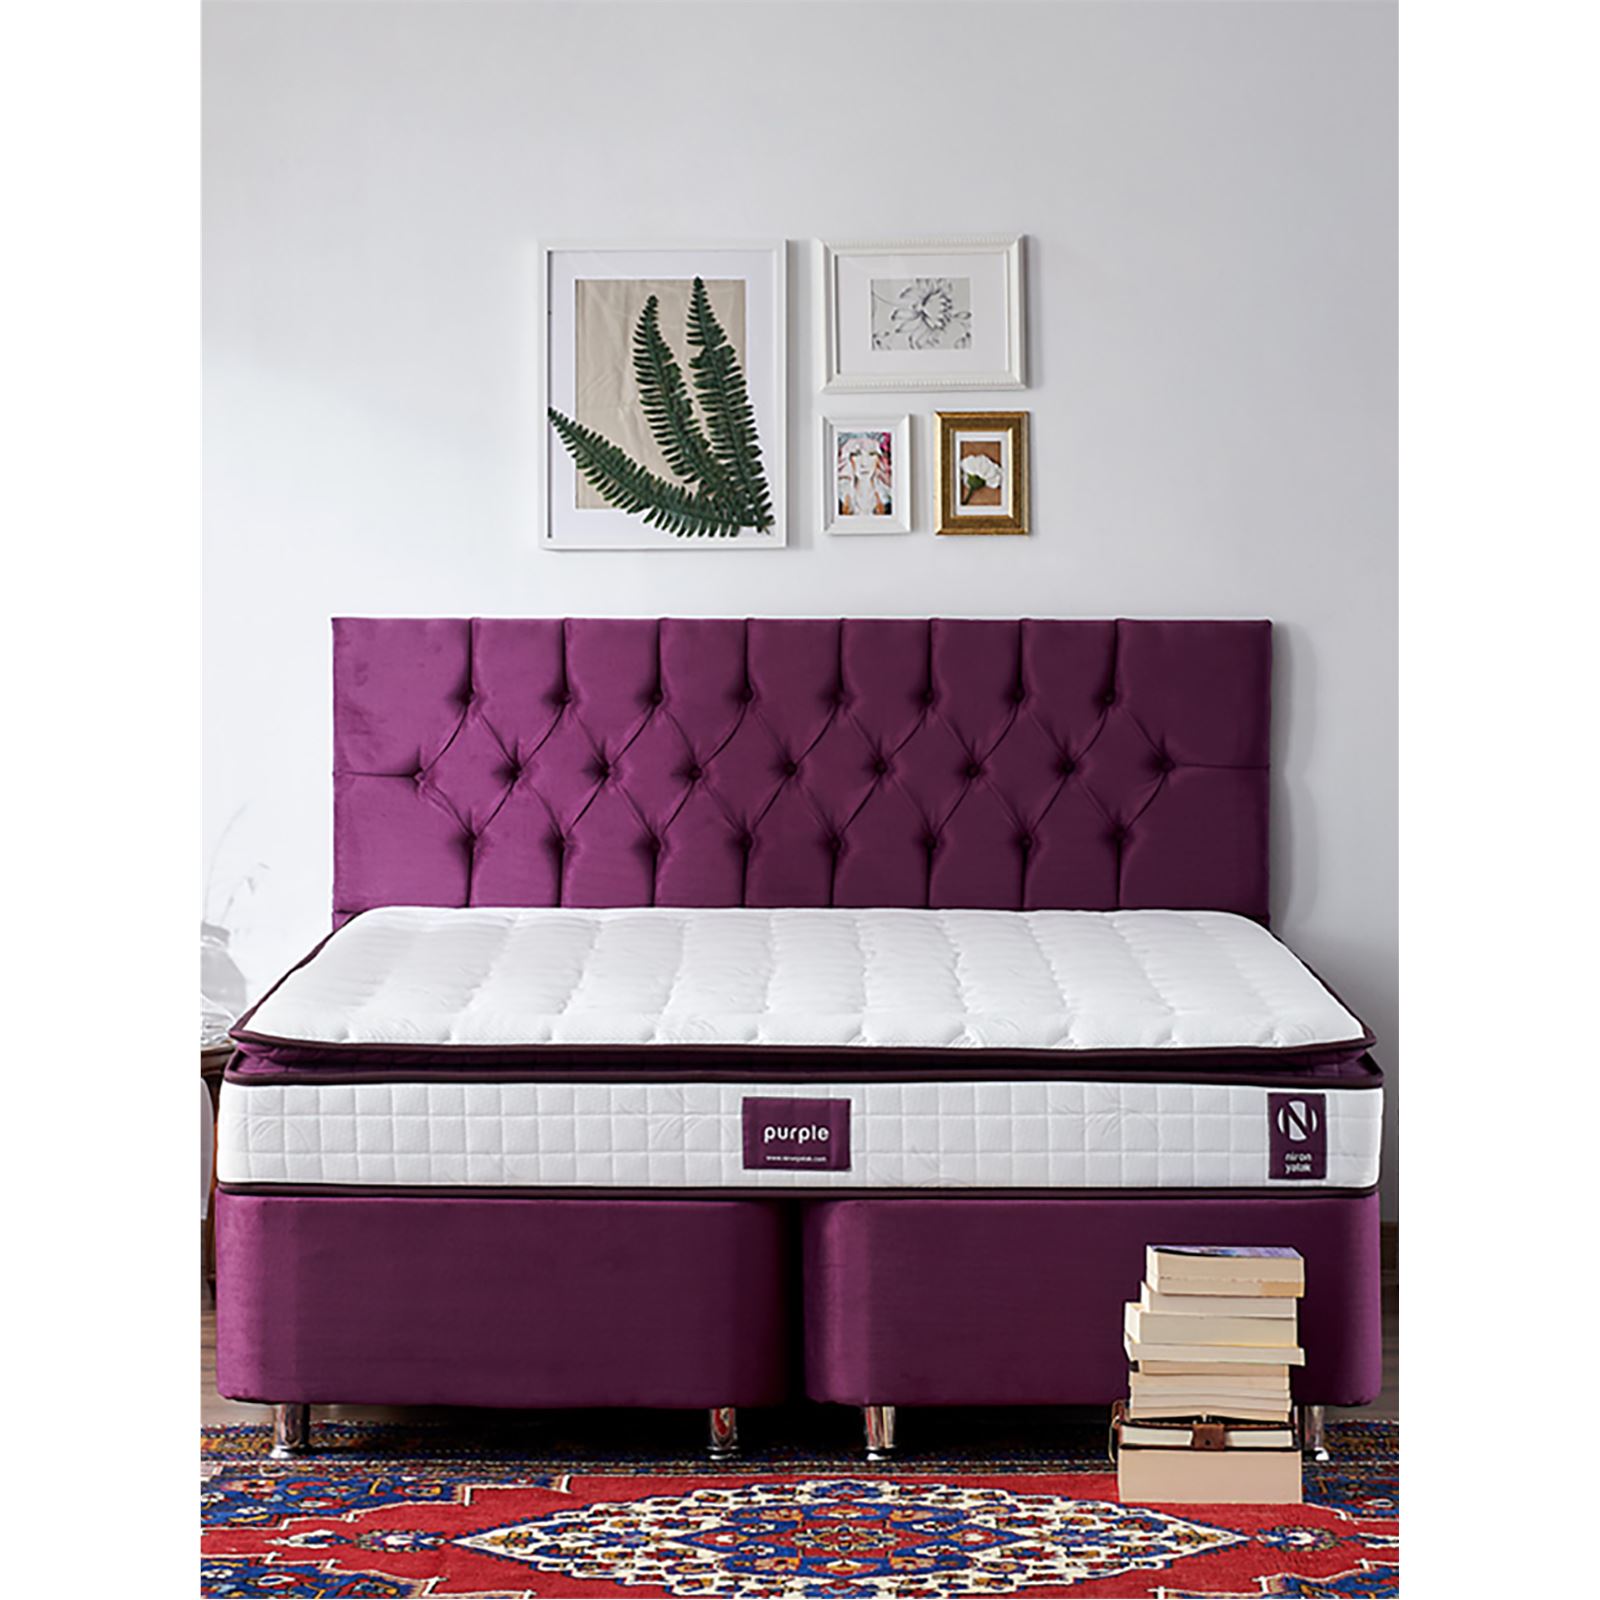 Niron Purple Yatak Seti 150x200 cm Çift Kişilik Yatak Baza Başlık Takımı Orta Sert Yatak Baza ve Başlığı Mor